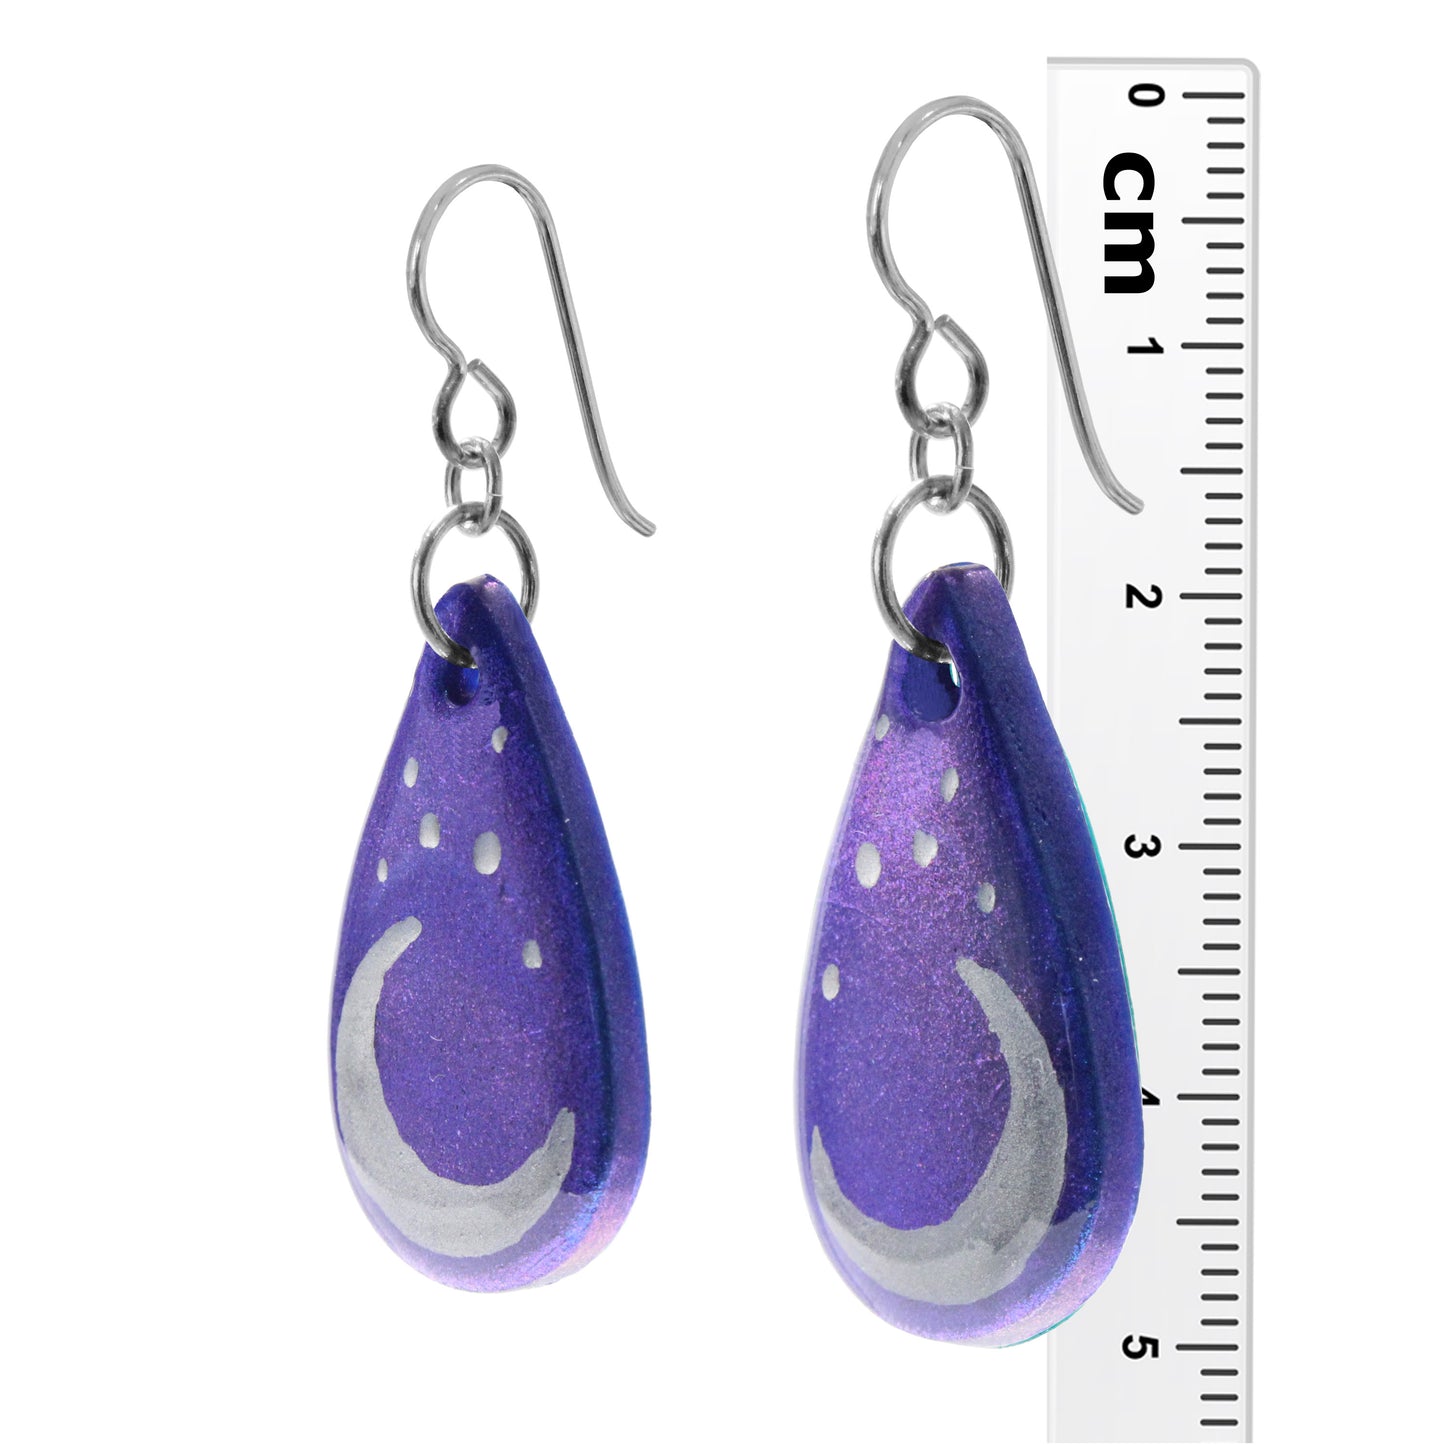 Starry Moon Earrings / 50mm length / sterling silver earwires